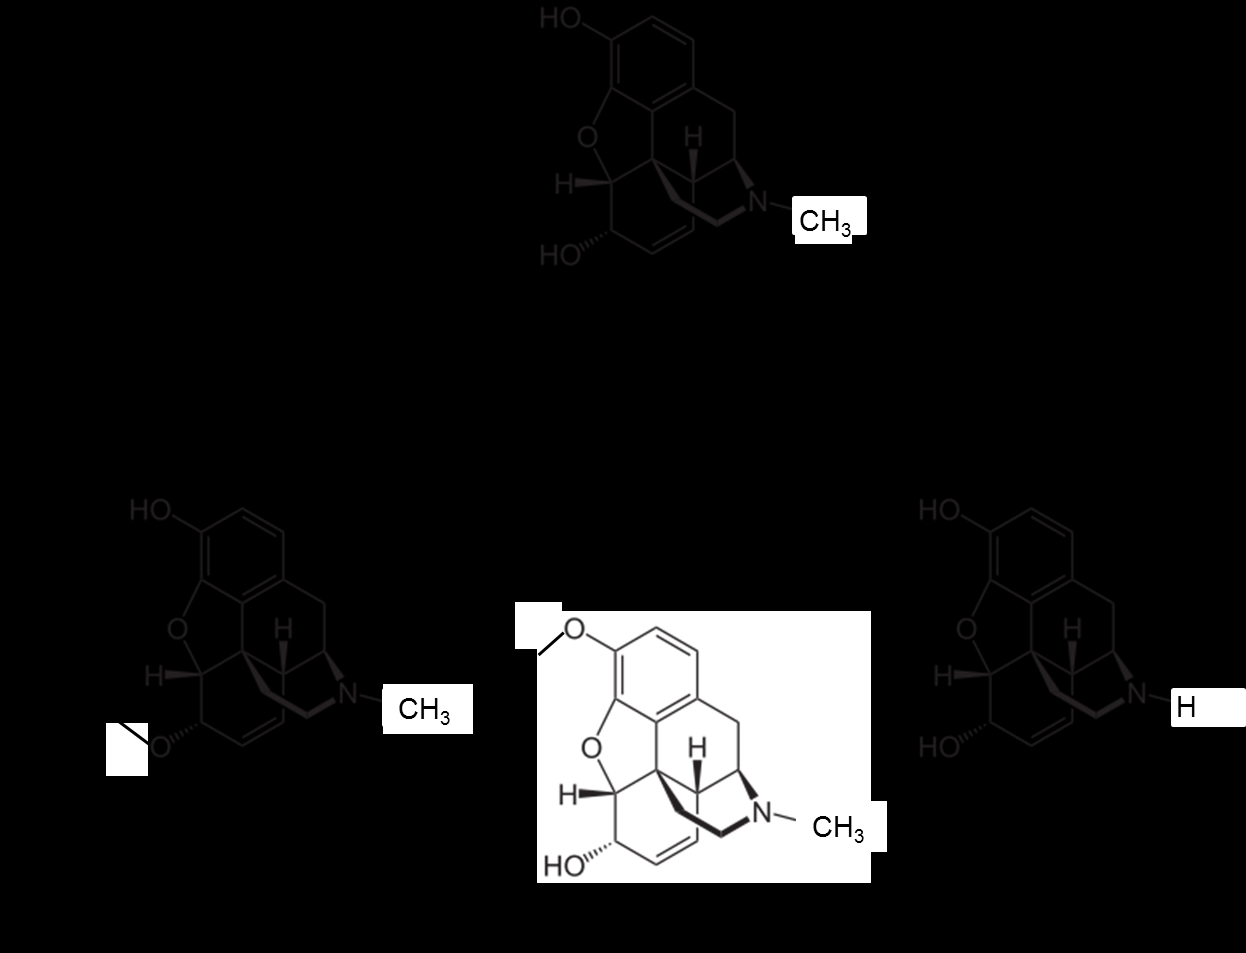 Einleitung 10 Abbildung 3. Schematische Darstellung des Metabolismus von Morphin und der zugehörigen Enzyme. A: Morphin, B: Morphin-6-glucuronid, C: Morphin-3-glucuronid; D: Normorphin.